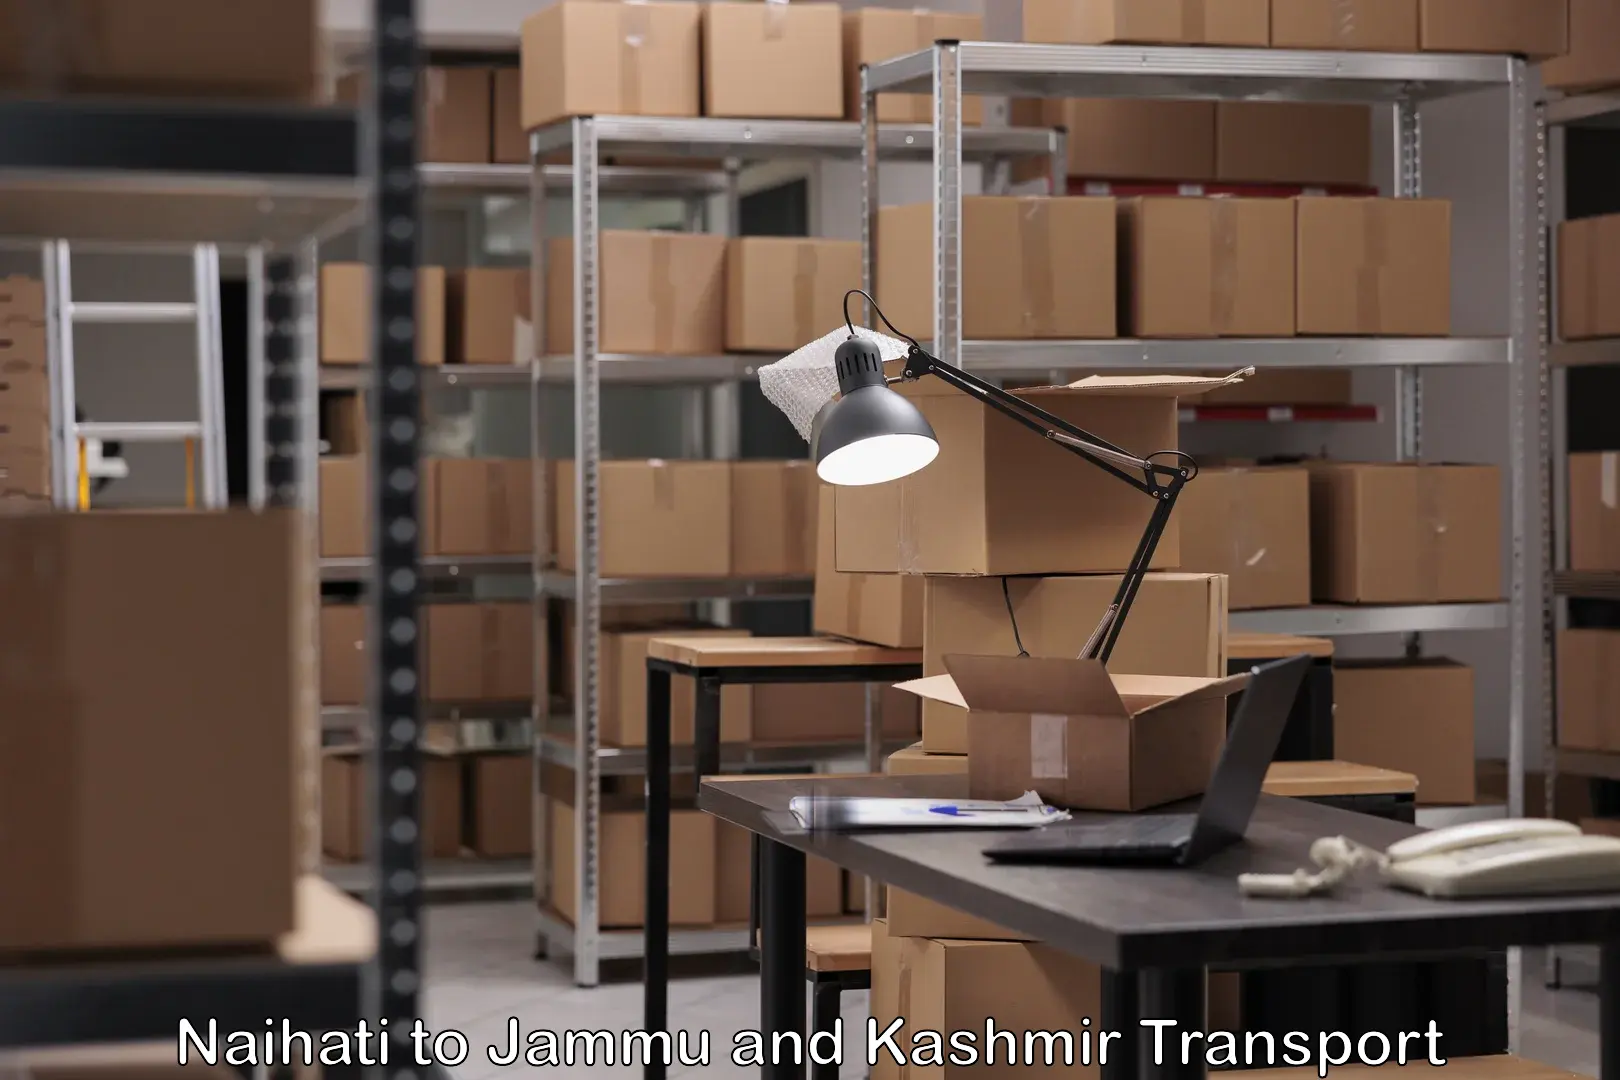 Cargo transport services Naihati to Jammu and Kashmir